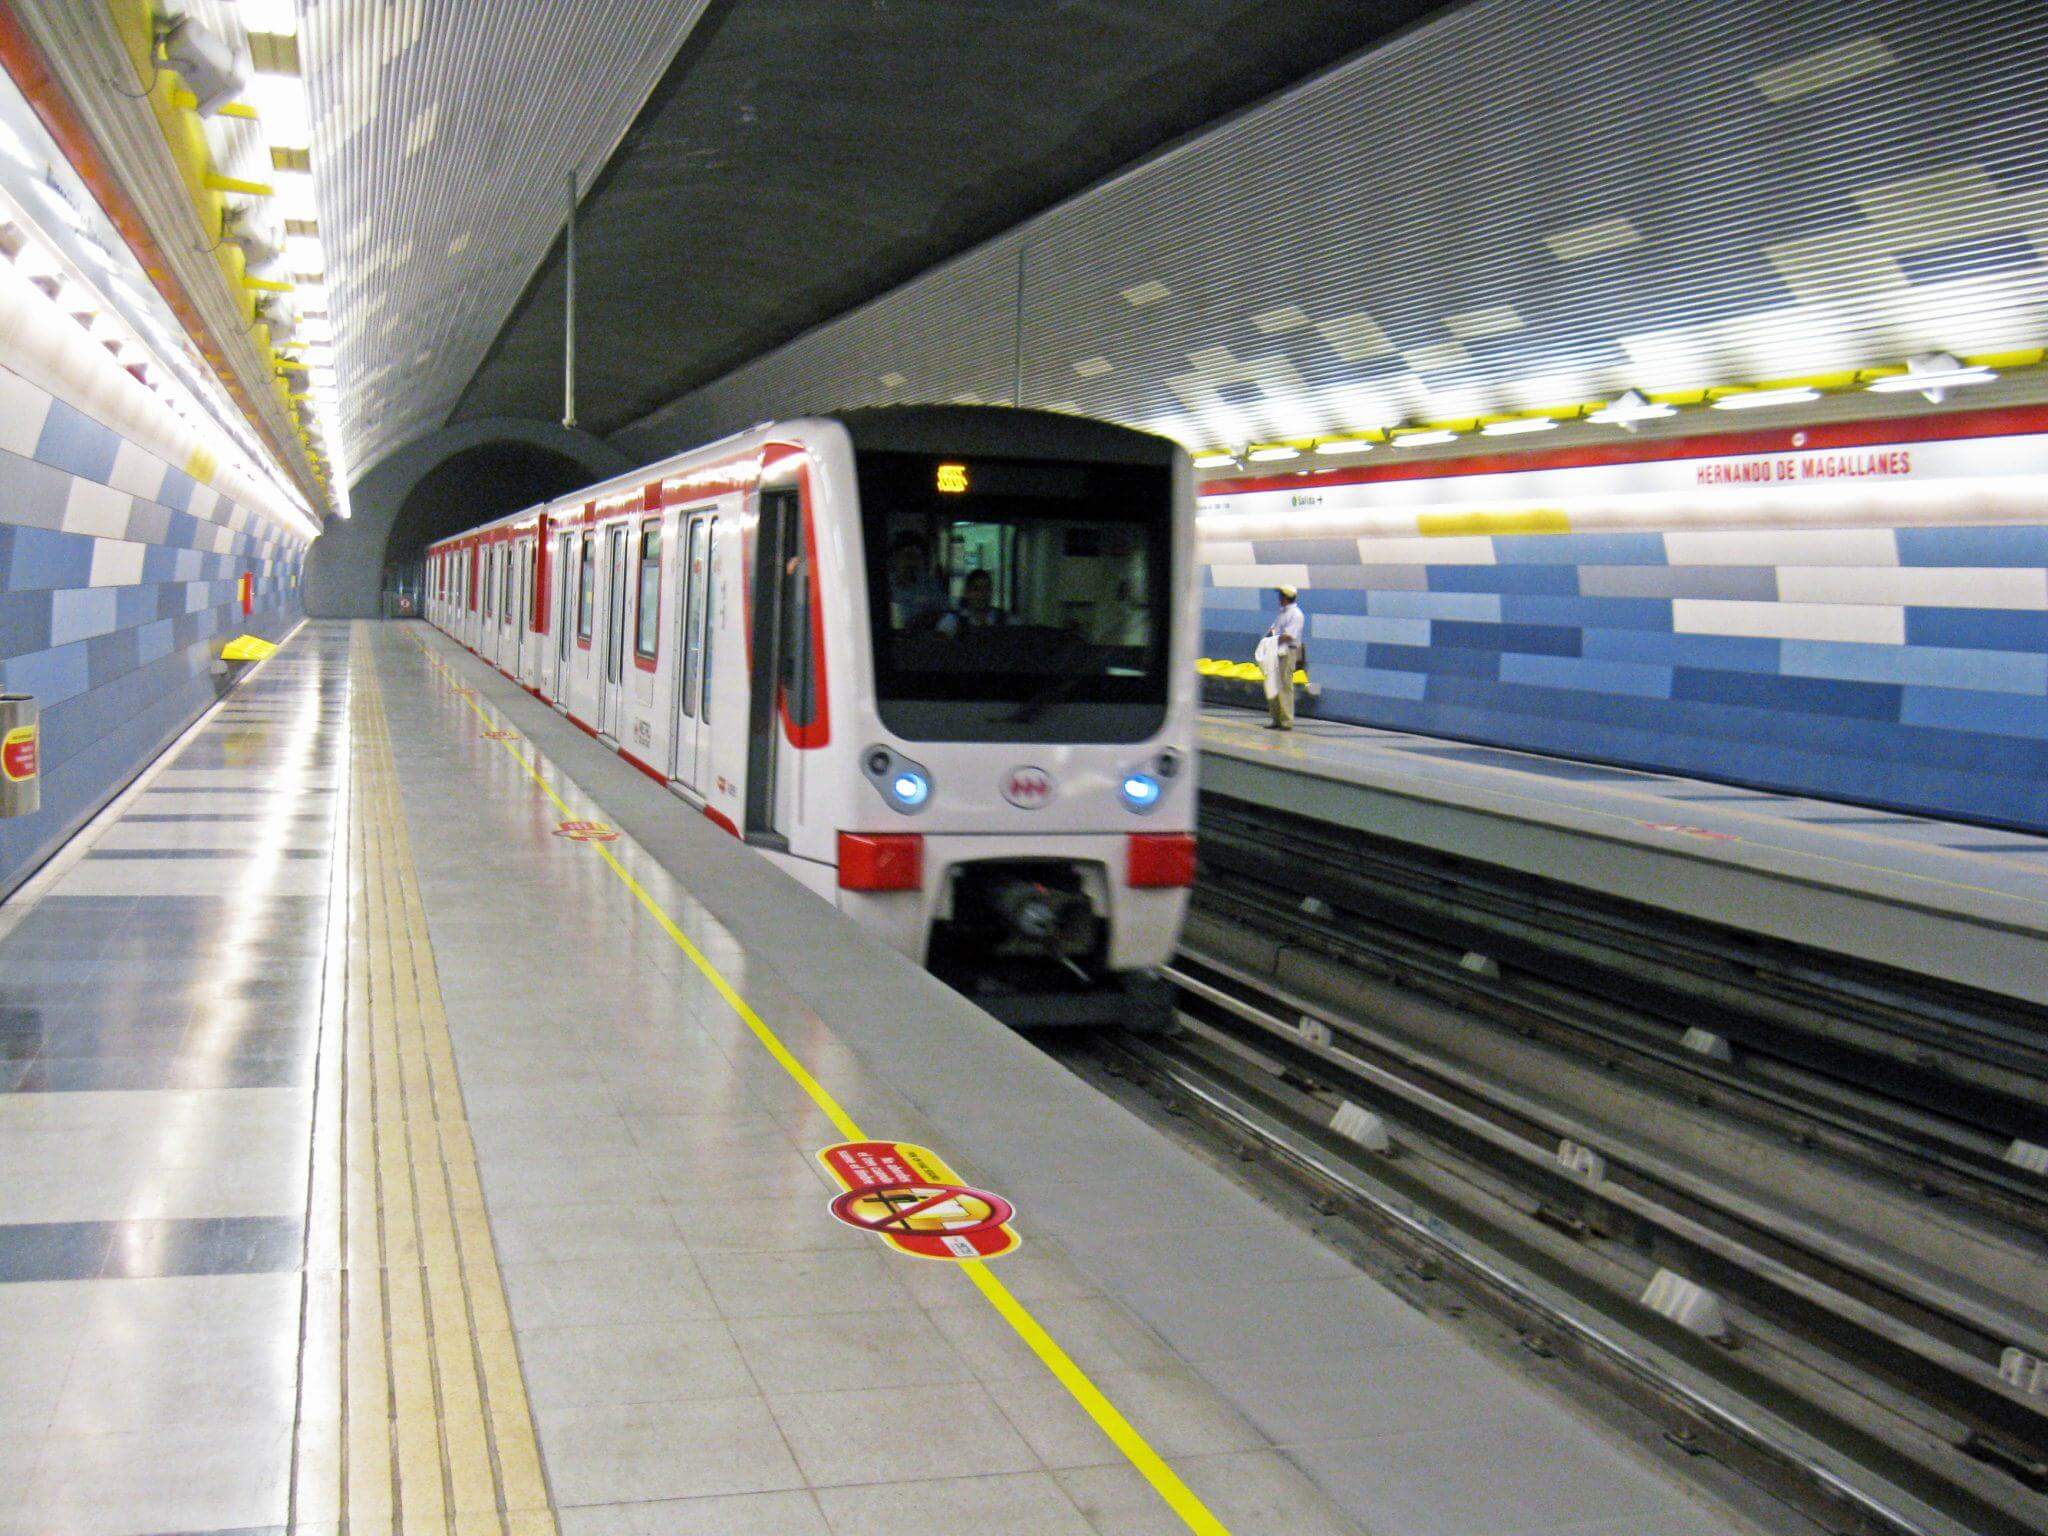 Santiago Metro Station